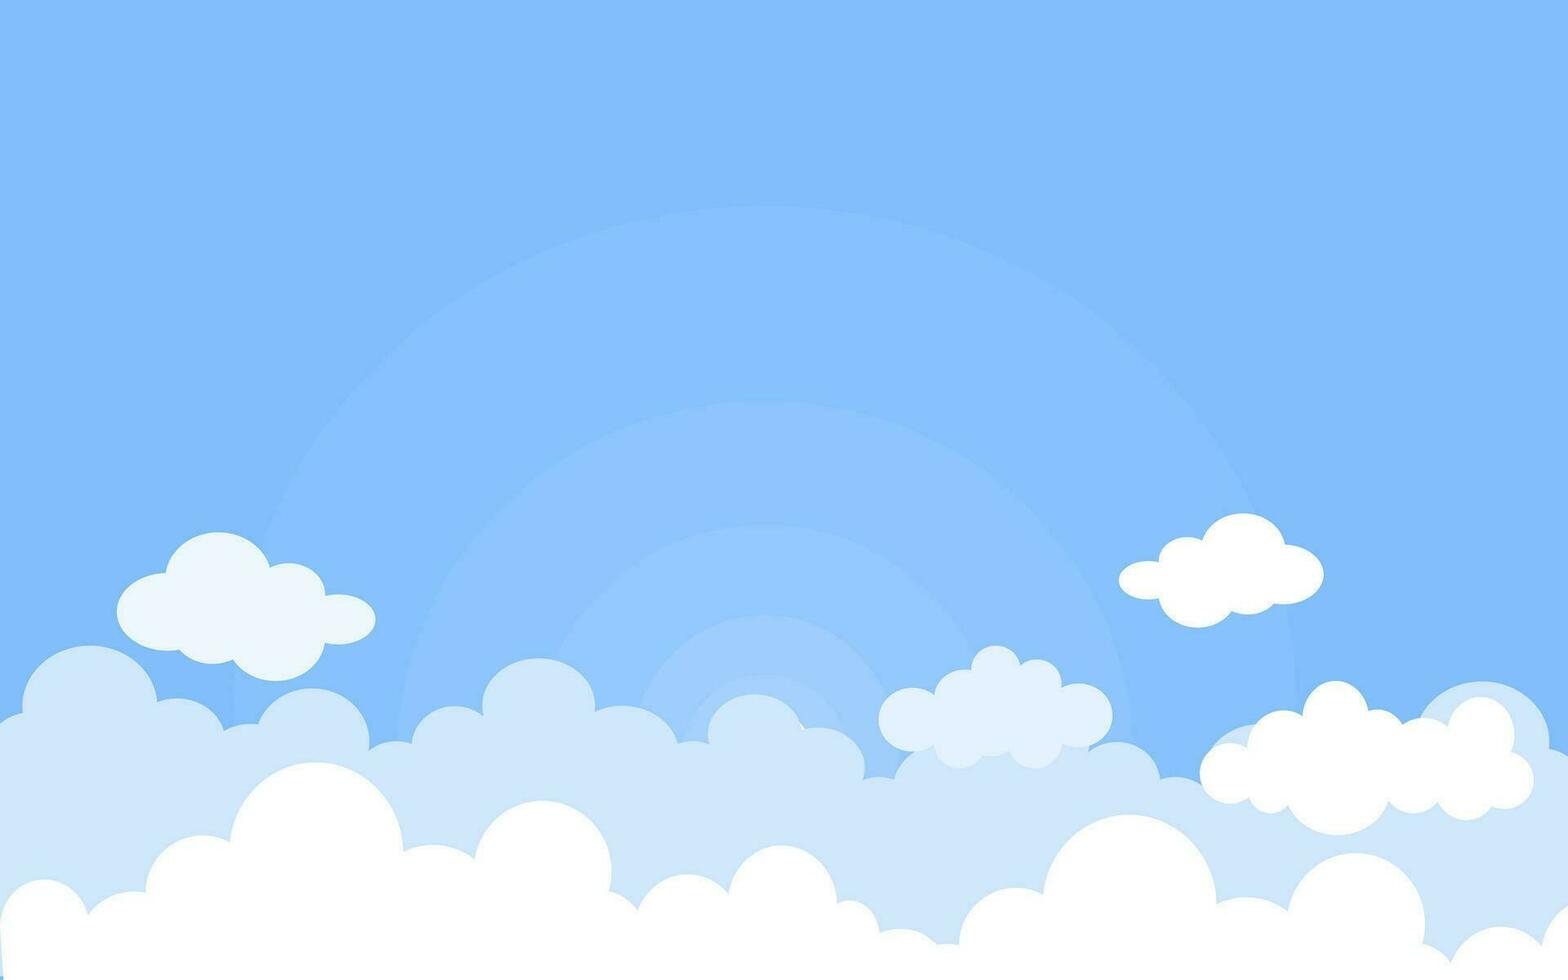 branco nuvens papel cortar com azul céu fundo vetor